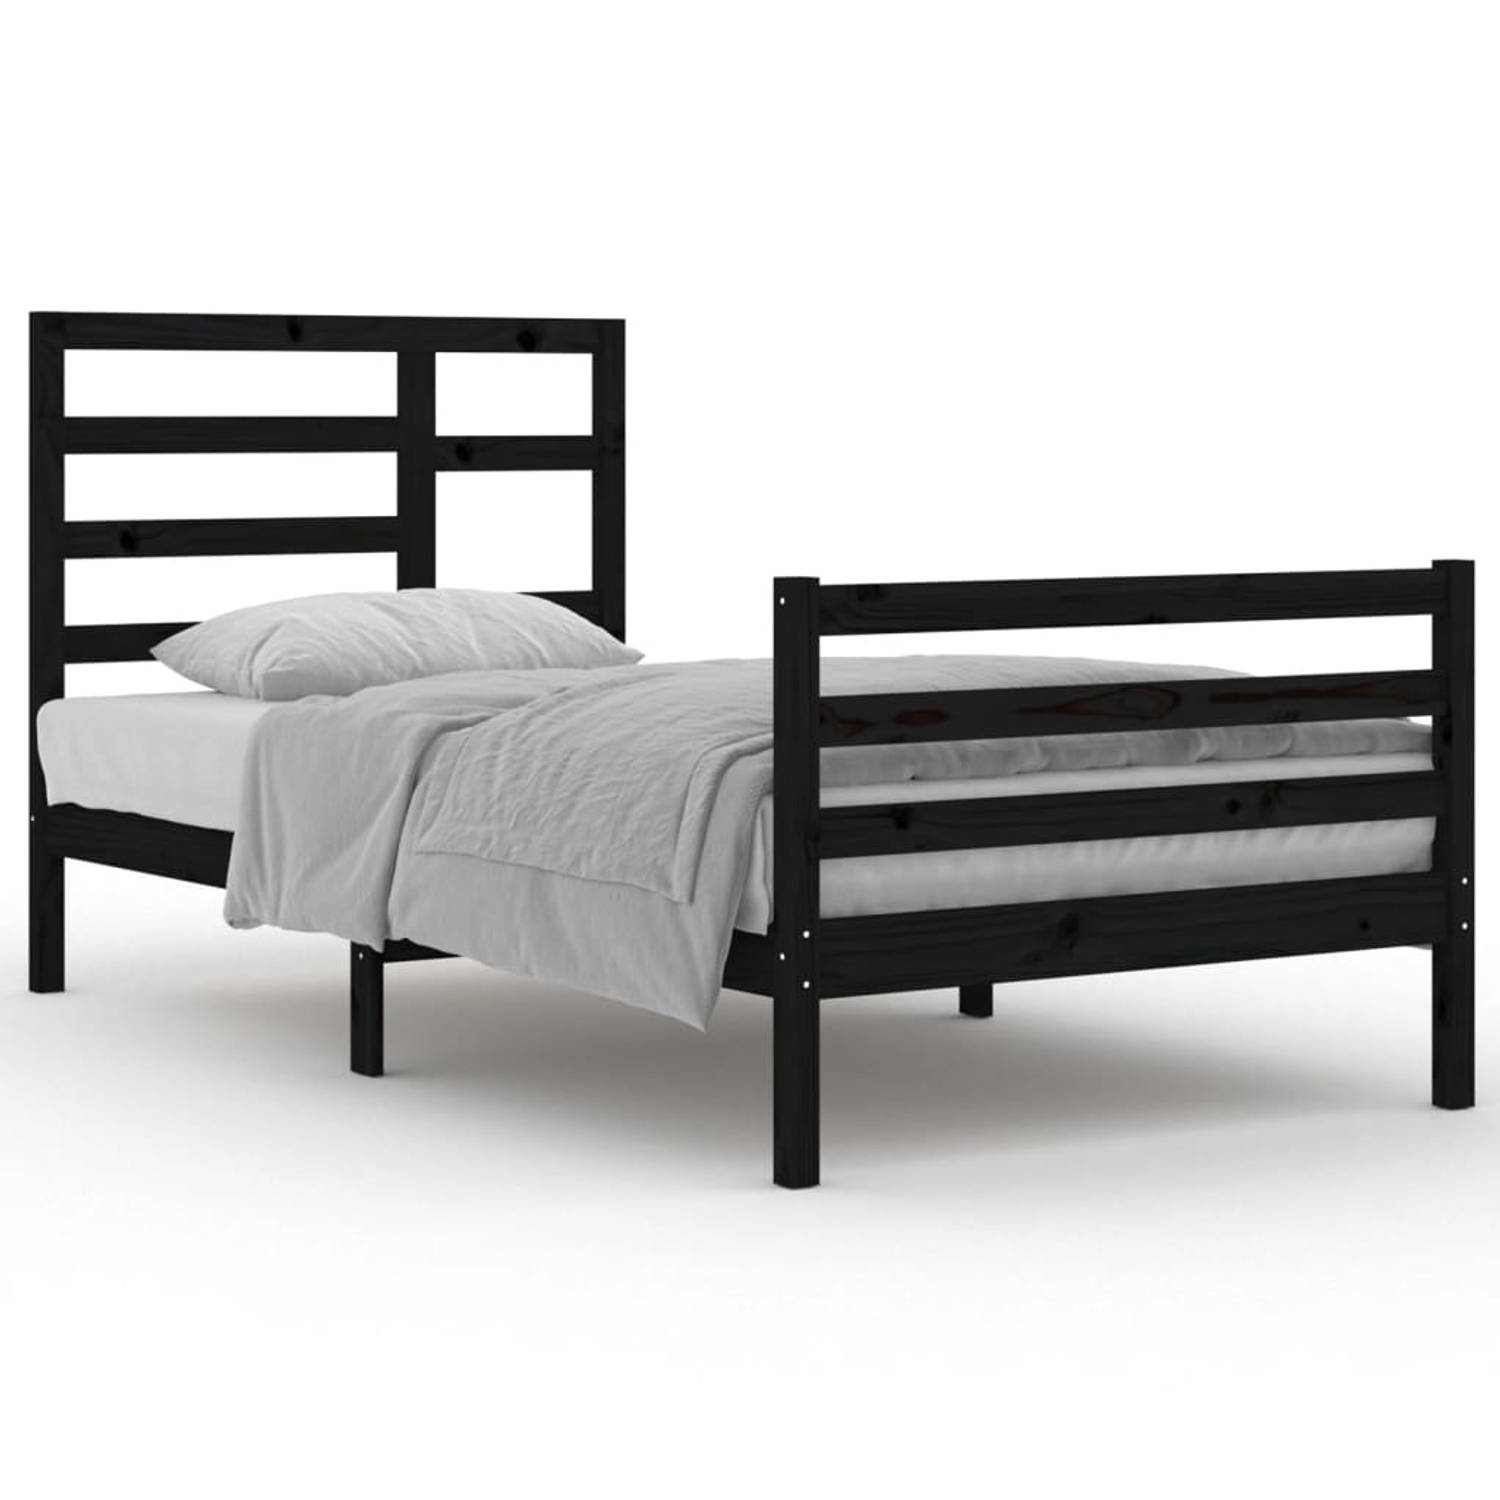 The Living Store Bedframe massief hout zwart 100x200 cm - Bedframe - Bedframes - Bed - Bedbodem - Ledikant - Bed Frame - Massief Houten Bedframe - Slaapmeubel - Eenpersoonsbed - Be